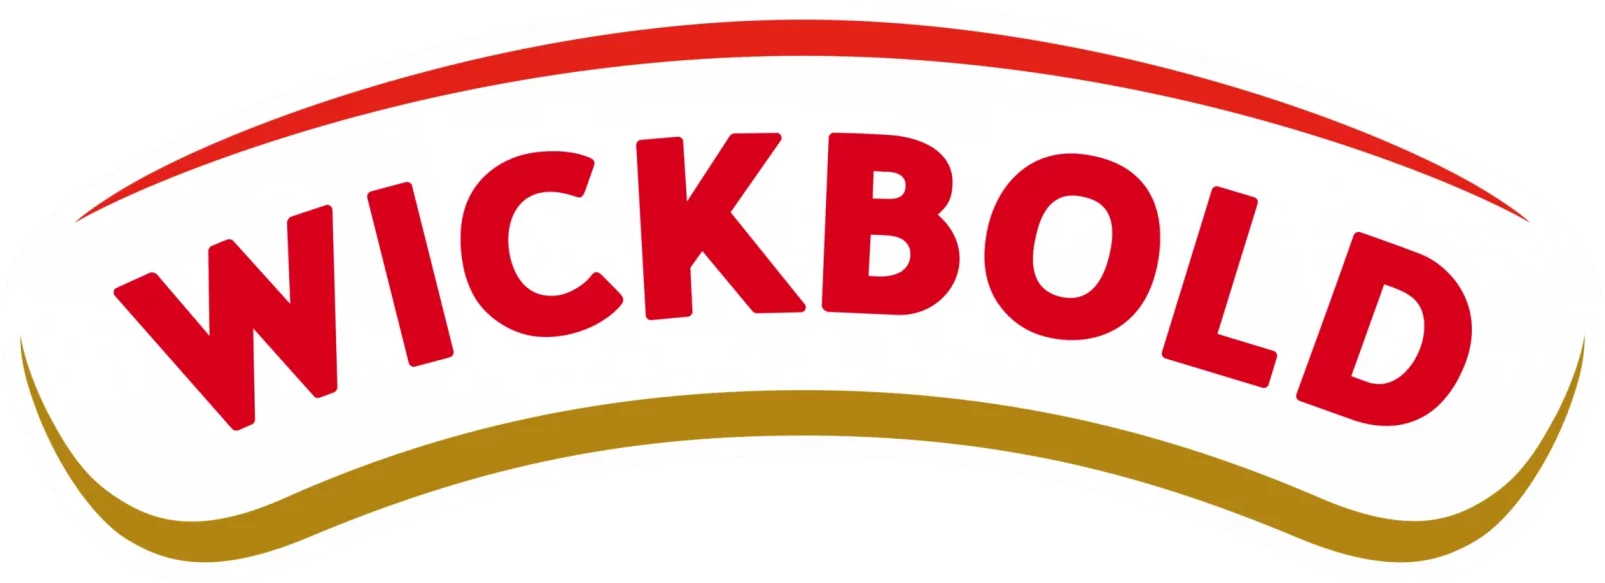 wickbold-logo-1692043259